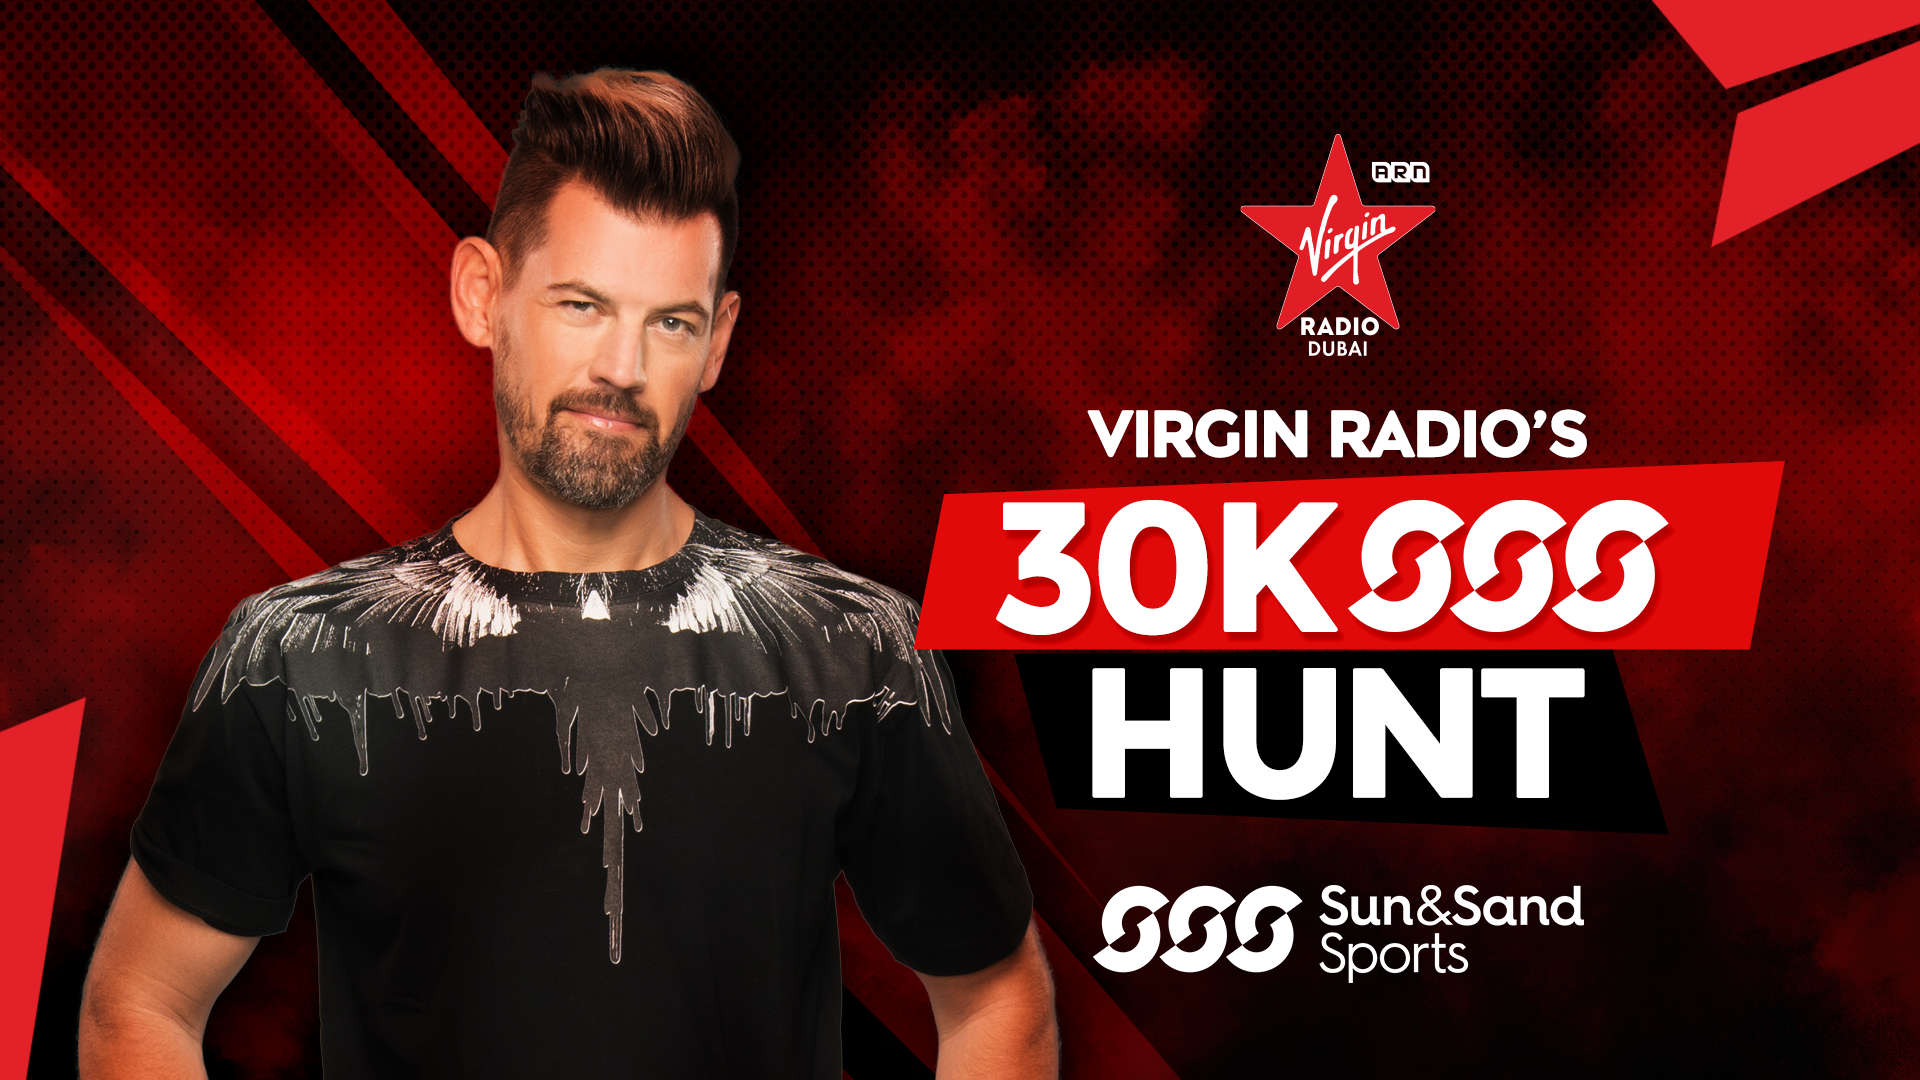 Virgin 30 k Sun sand sports